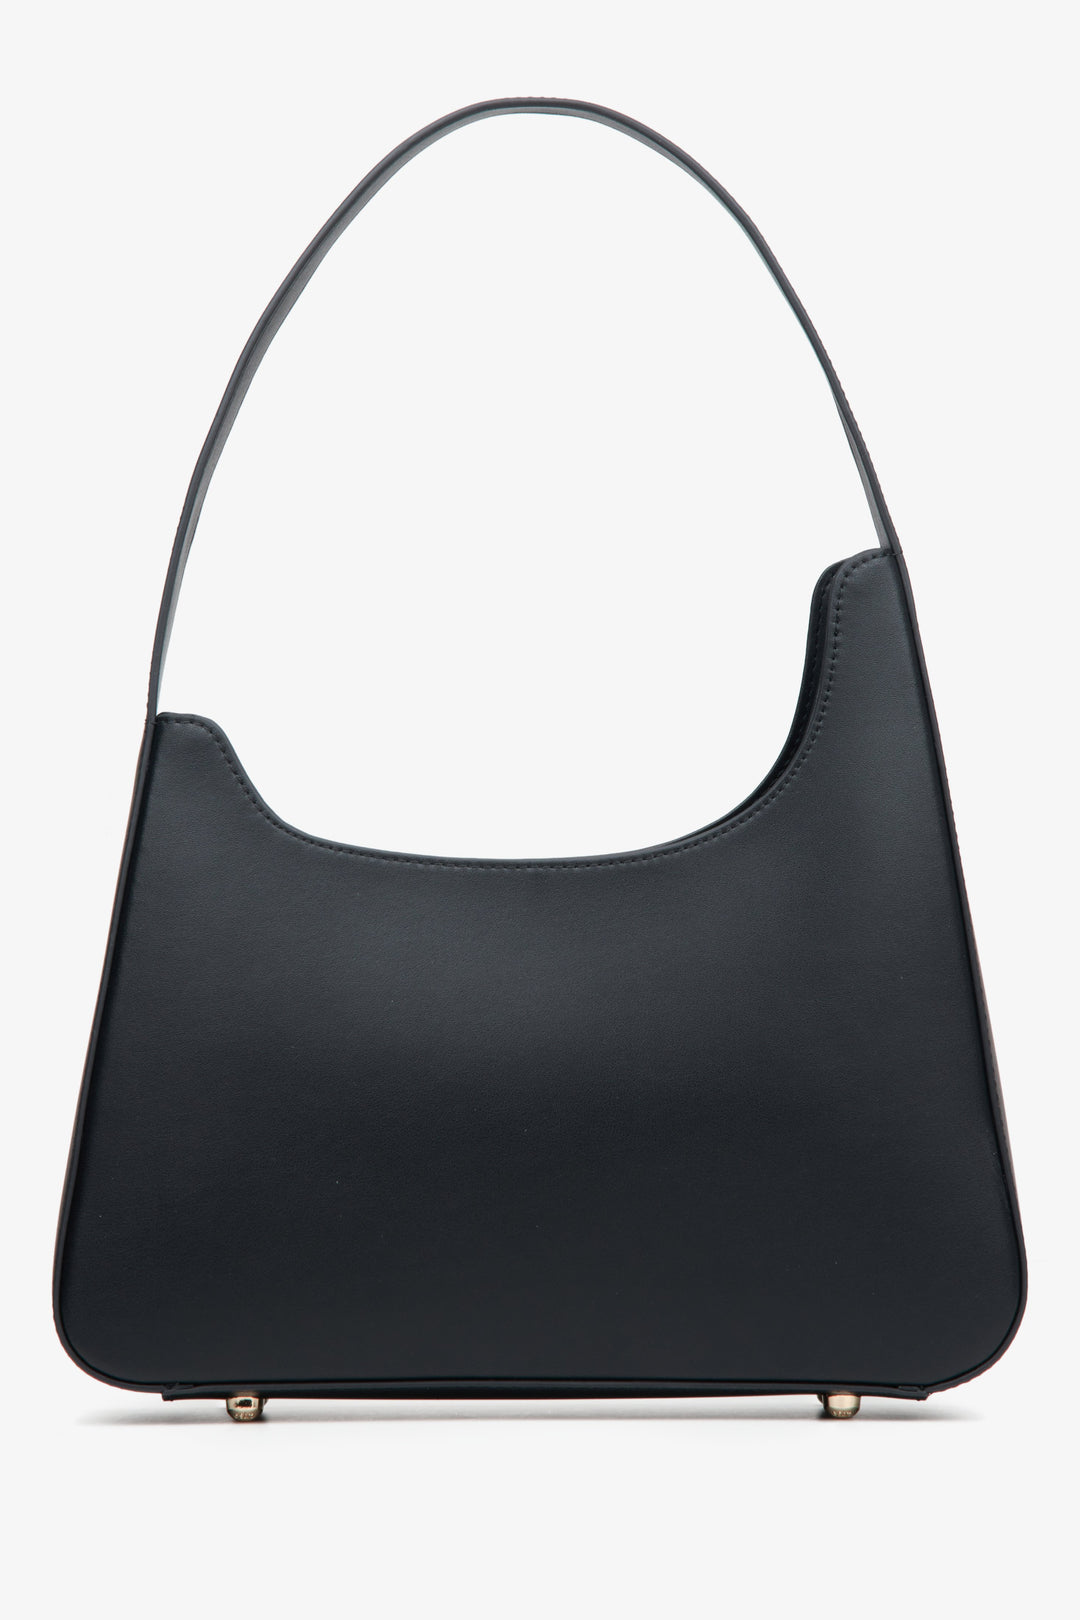 Women's black handbag Estro.